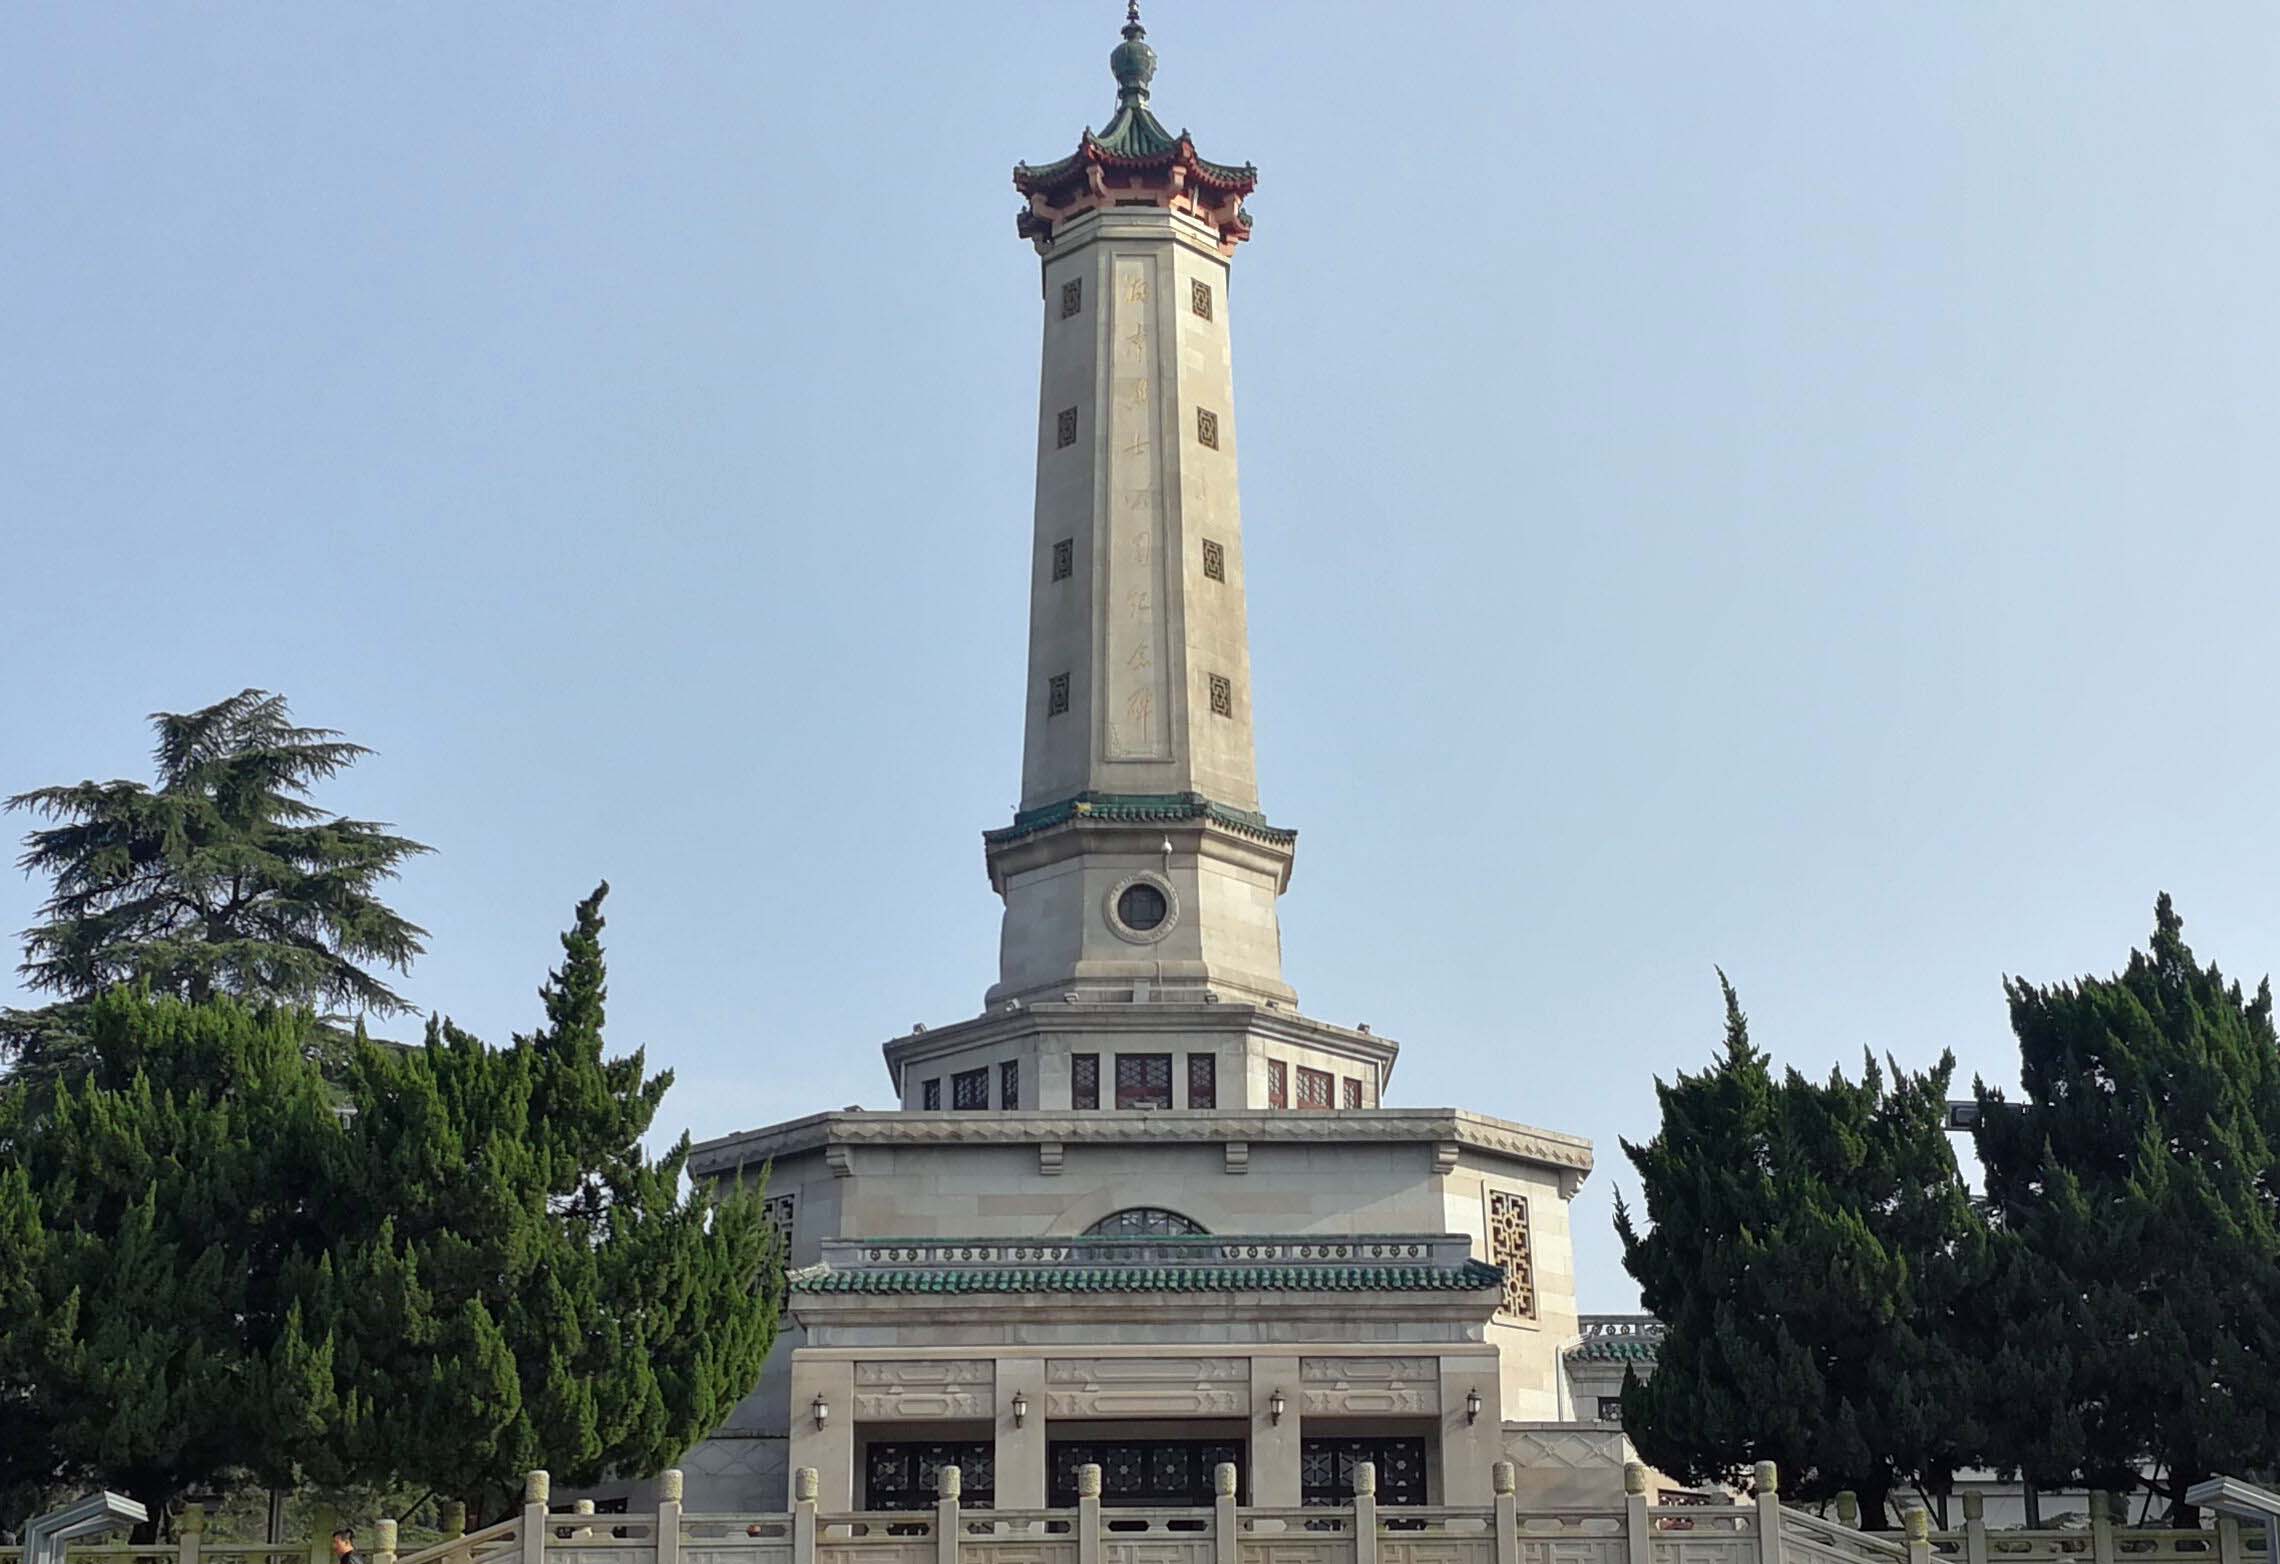 长沙烈士公园烈士纪念塔8月20日至9月25日闭馆,将进行铭文箔金维护